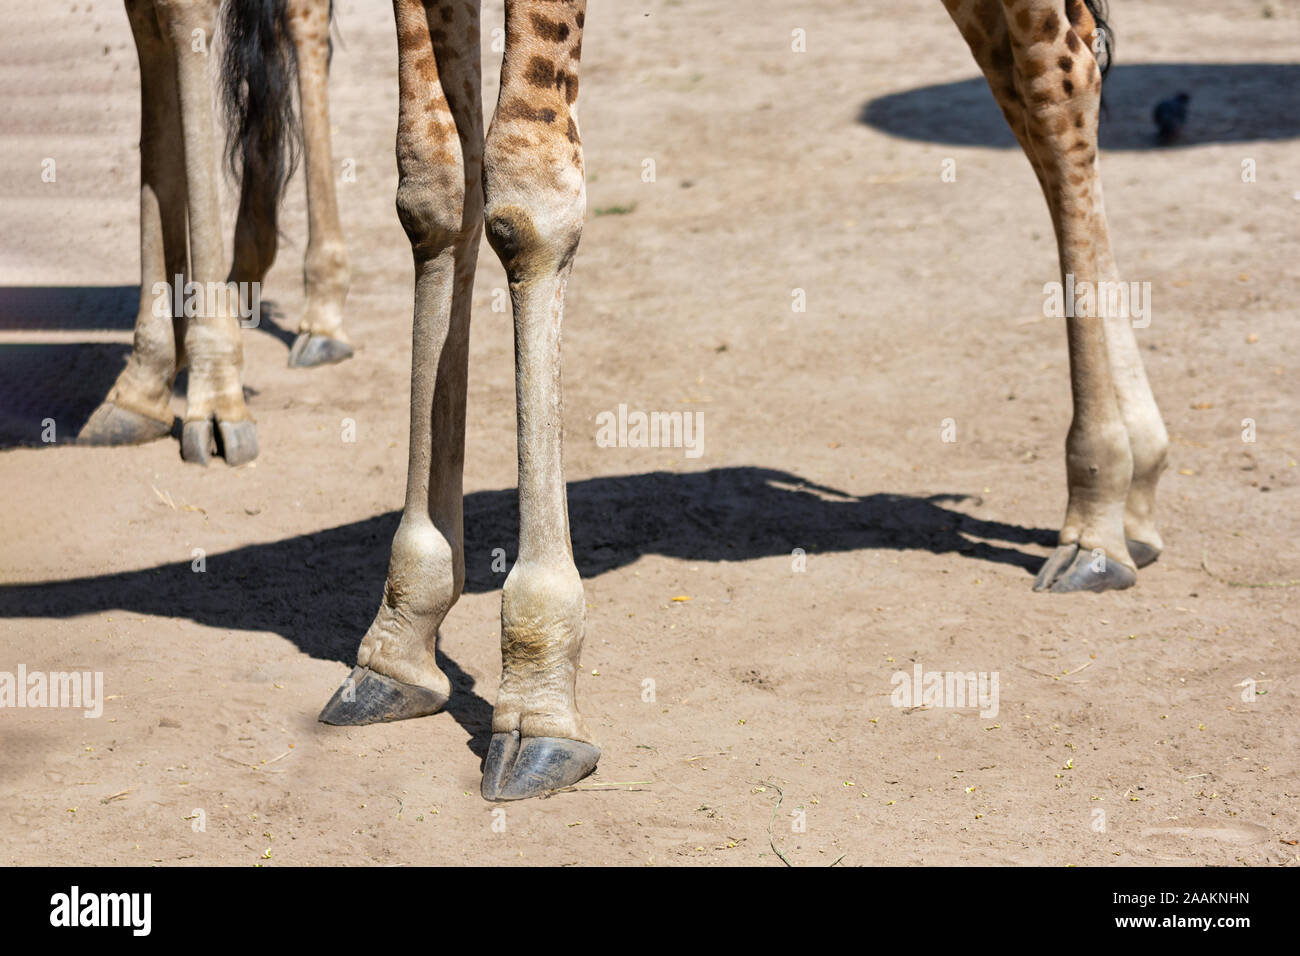 Legs of giraffes in Budapest zoo, Hungary Stock Photo